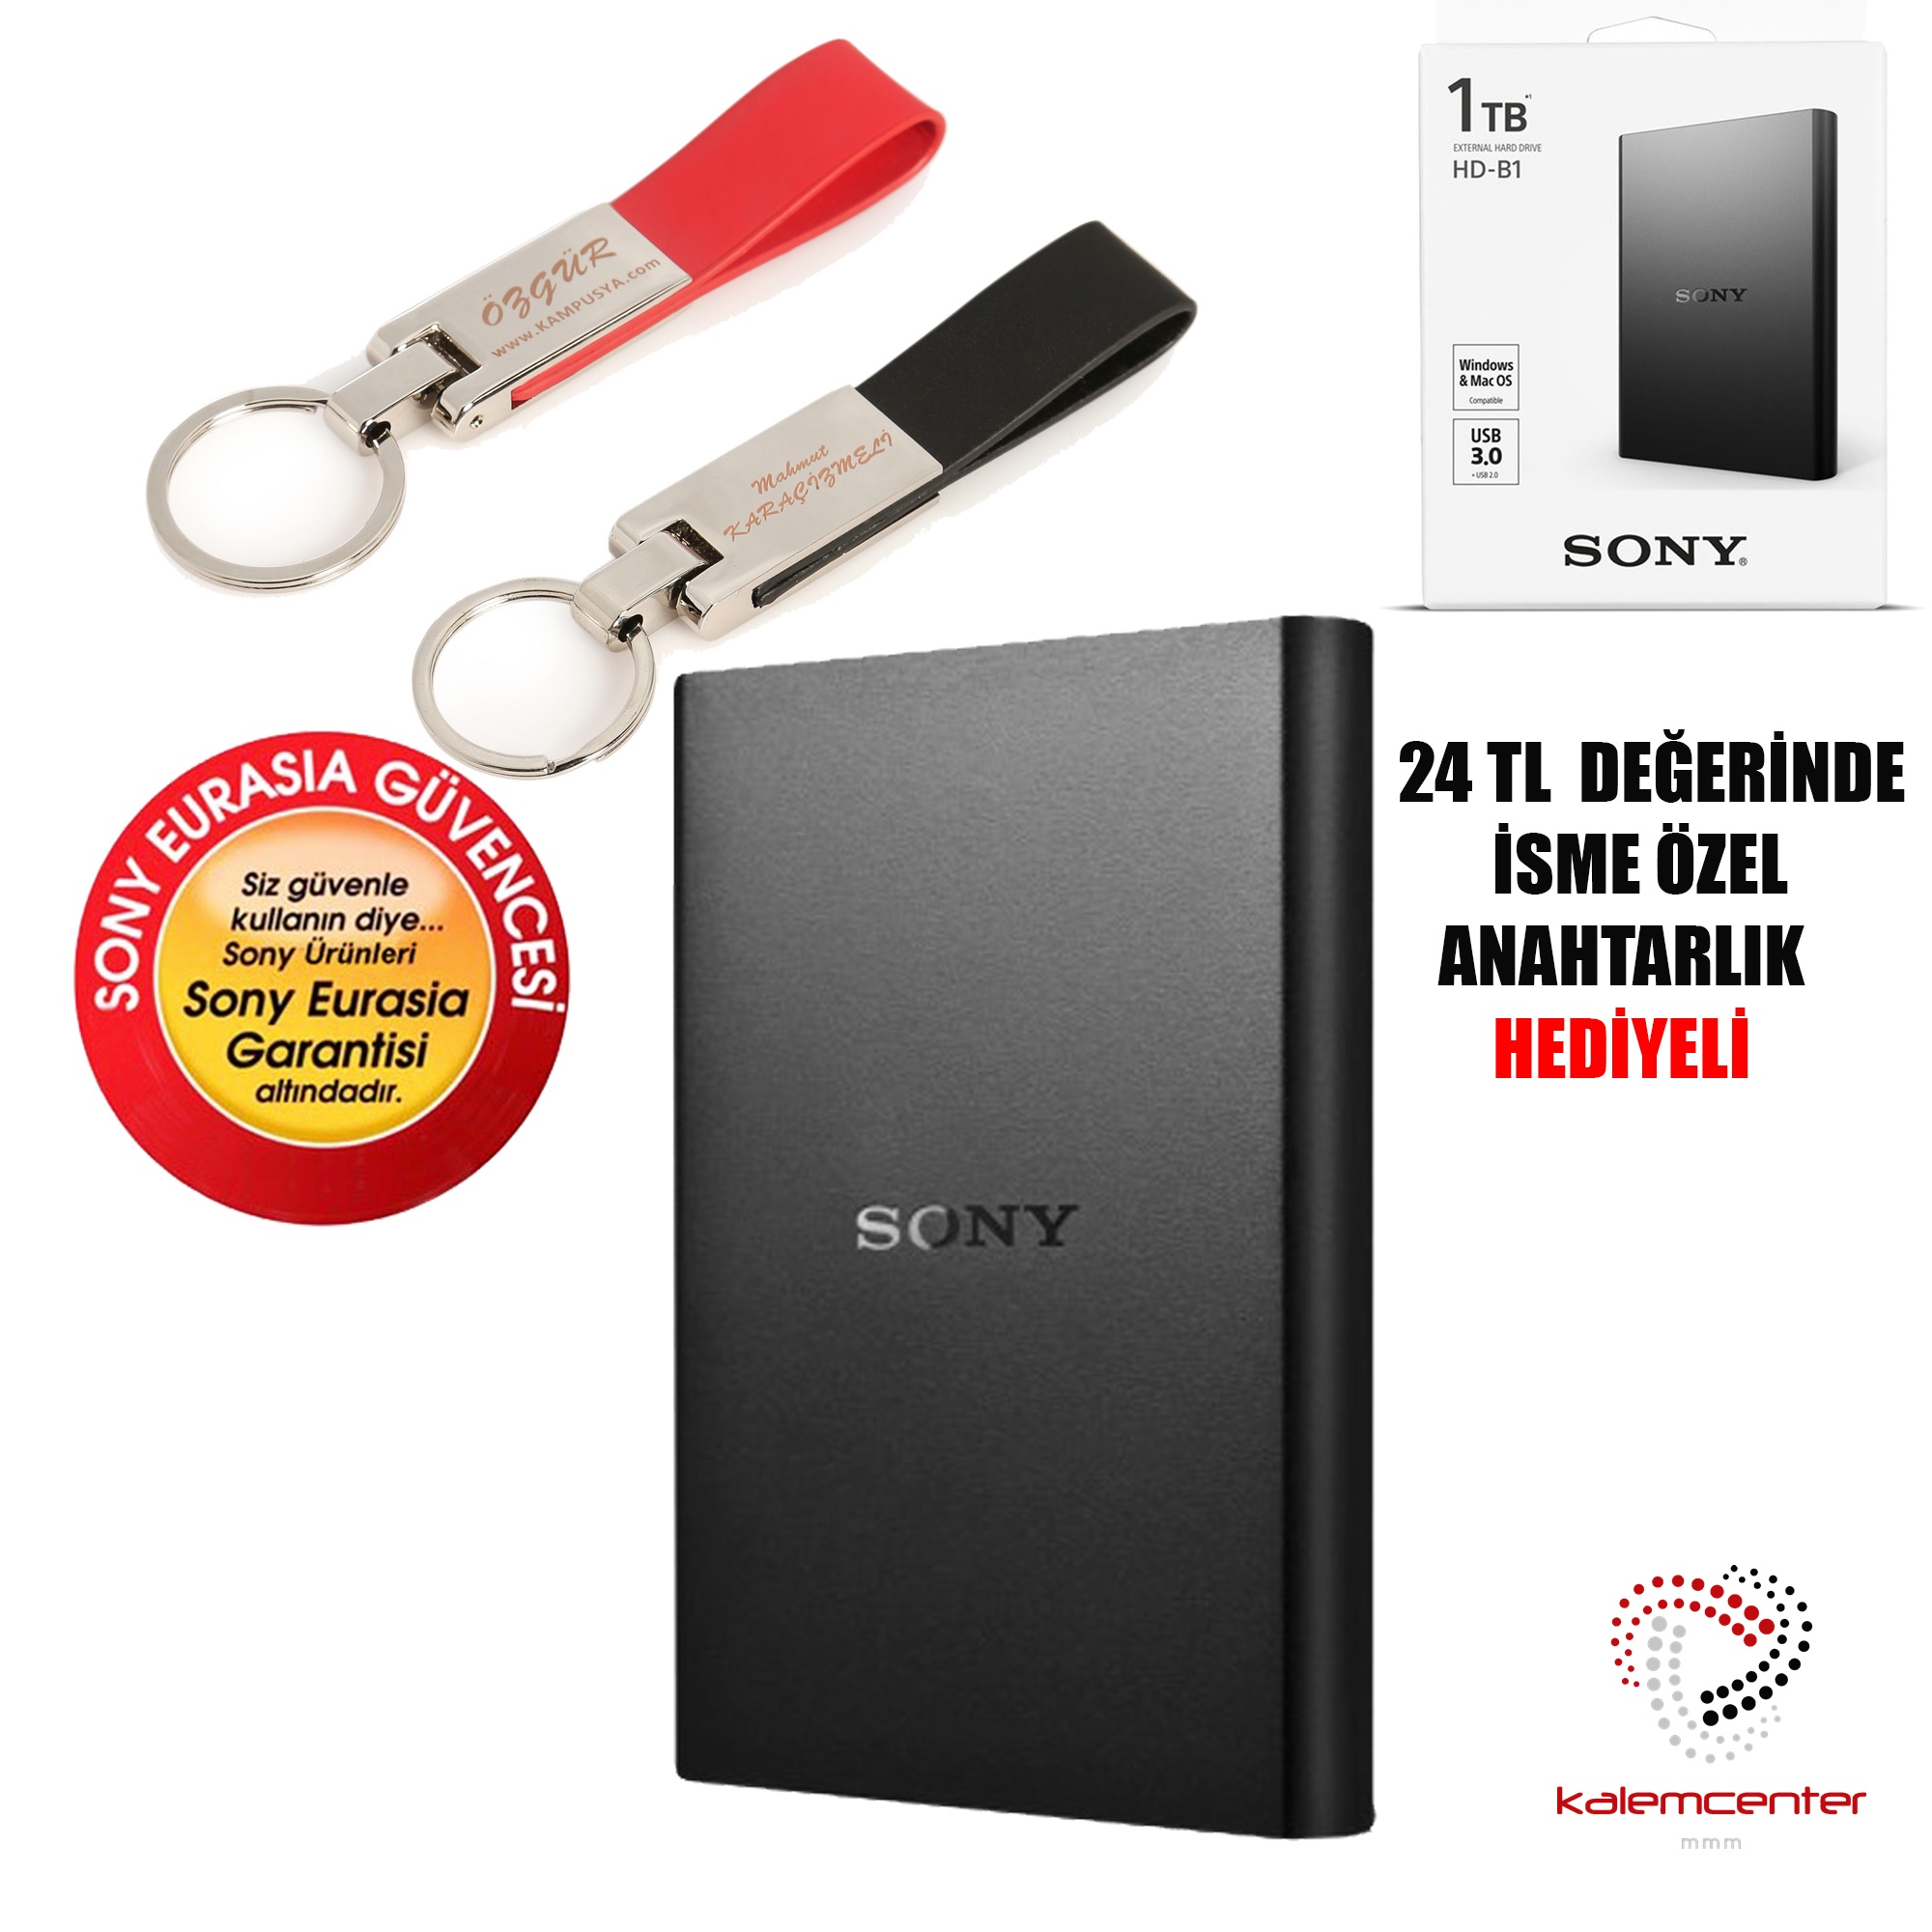 SONY HD-B1 2.5 inç 1 TB USB 3.0 Harici Disk